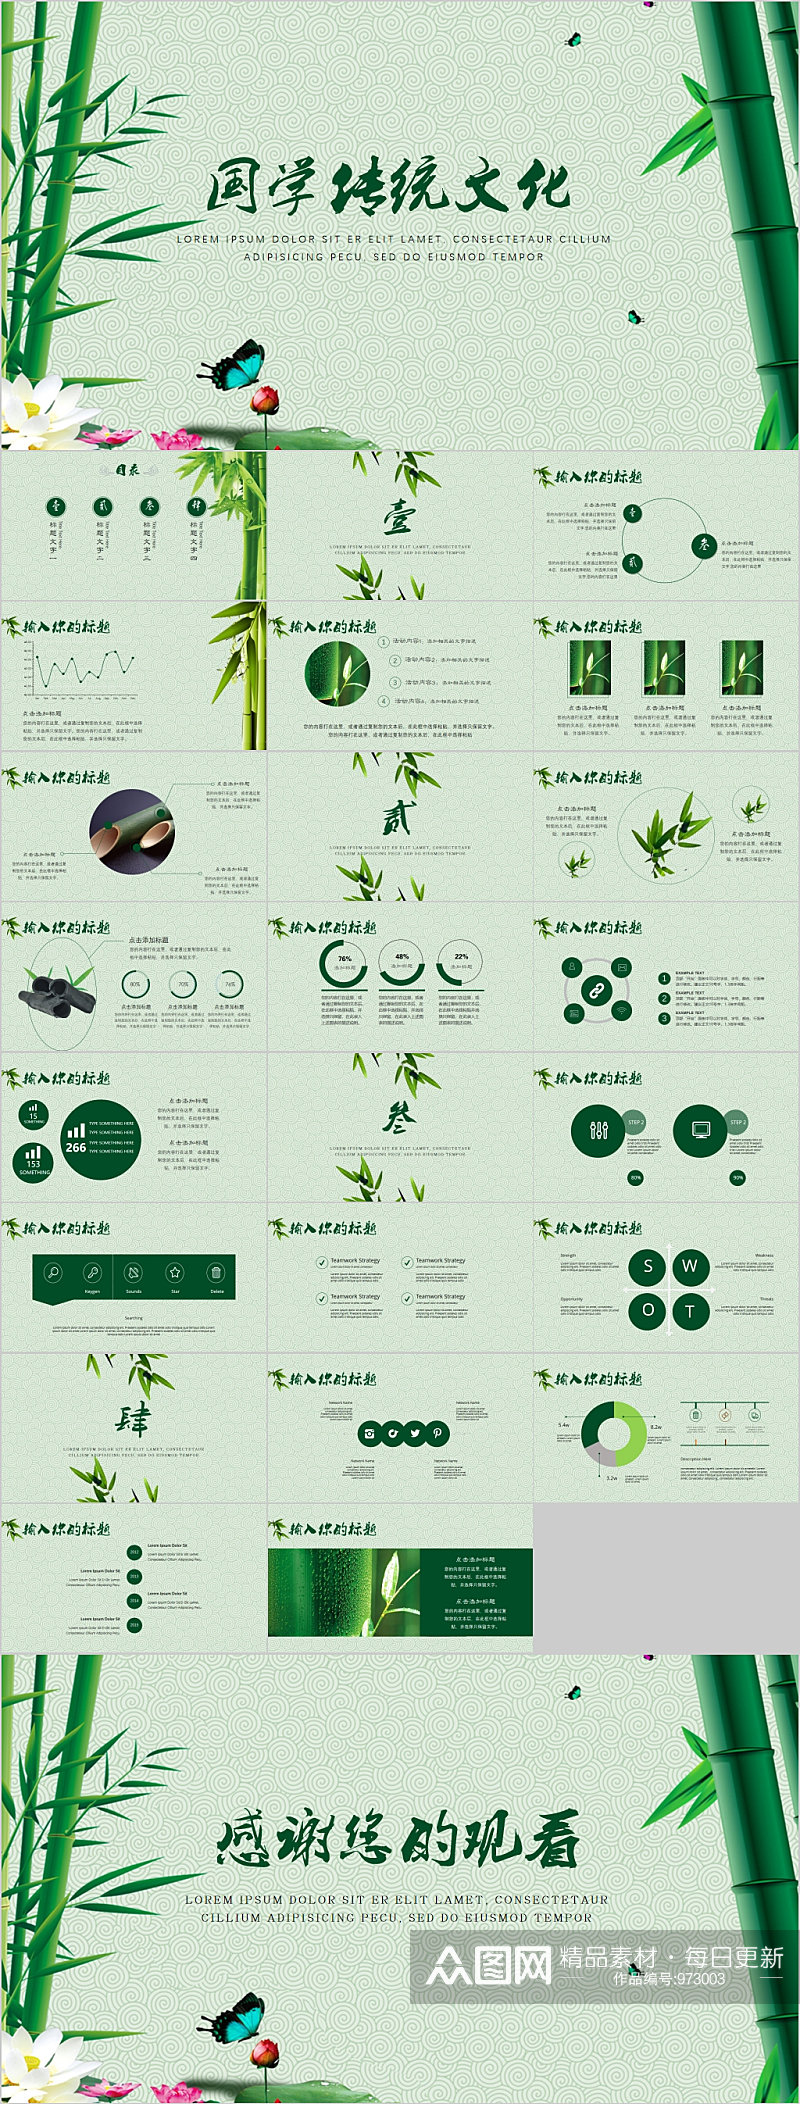 清新绿色竹子国学传统文化PPT模板素材